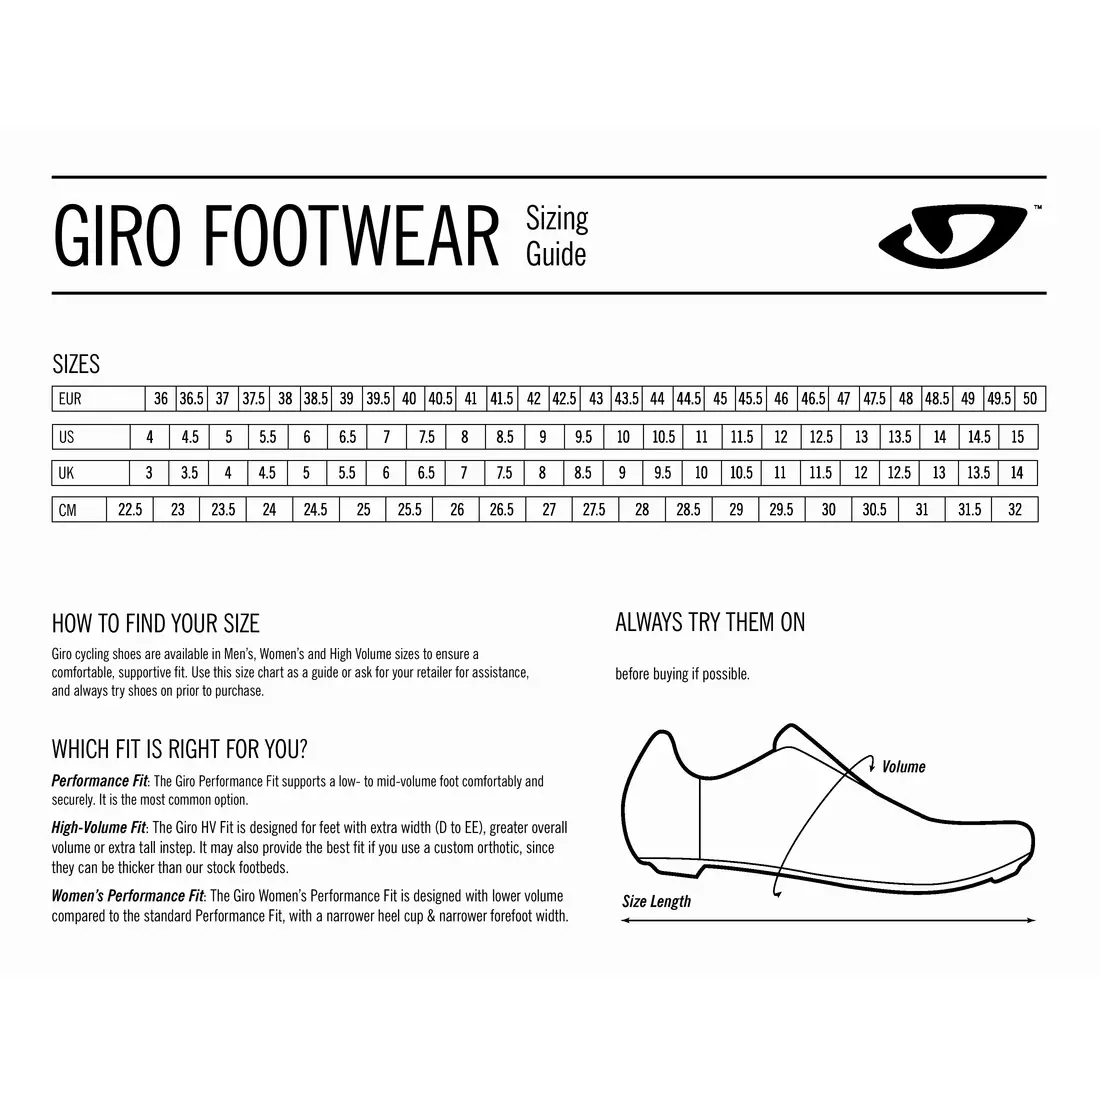 GIRO pánská cyklistická obuv SECTOR olive gum GR-7122768